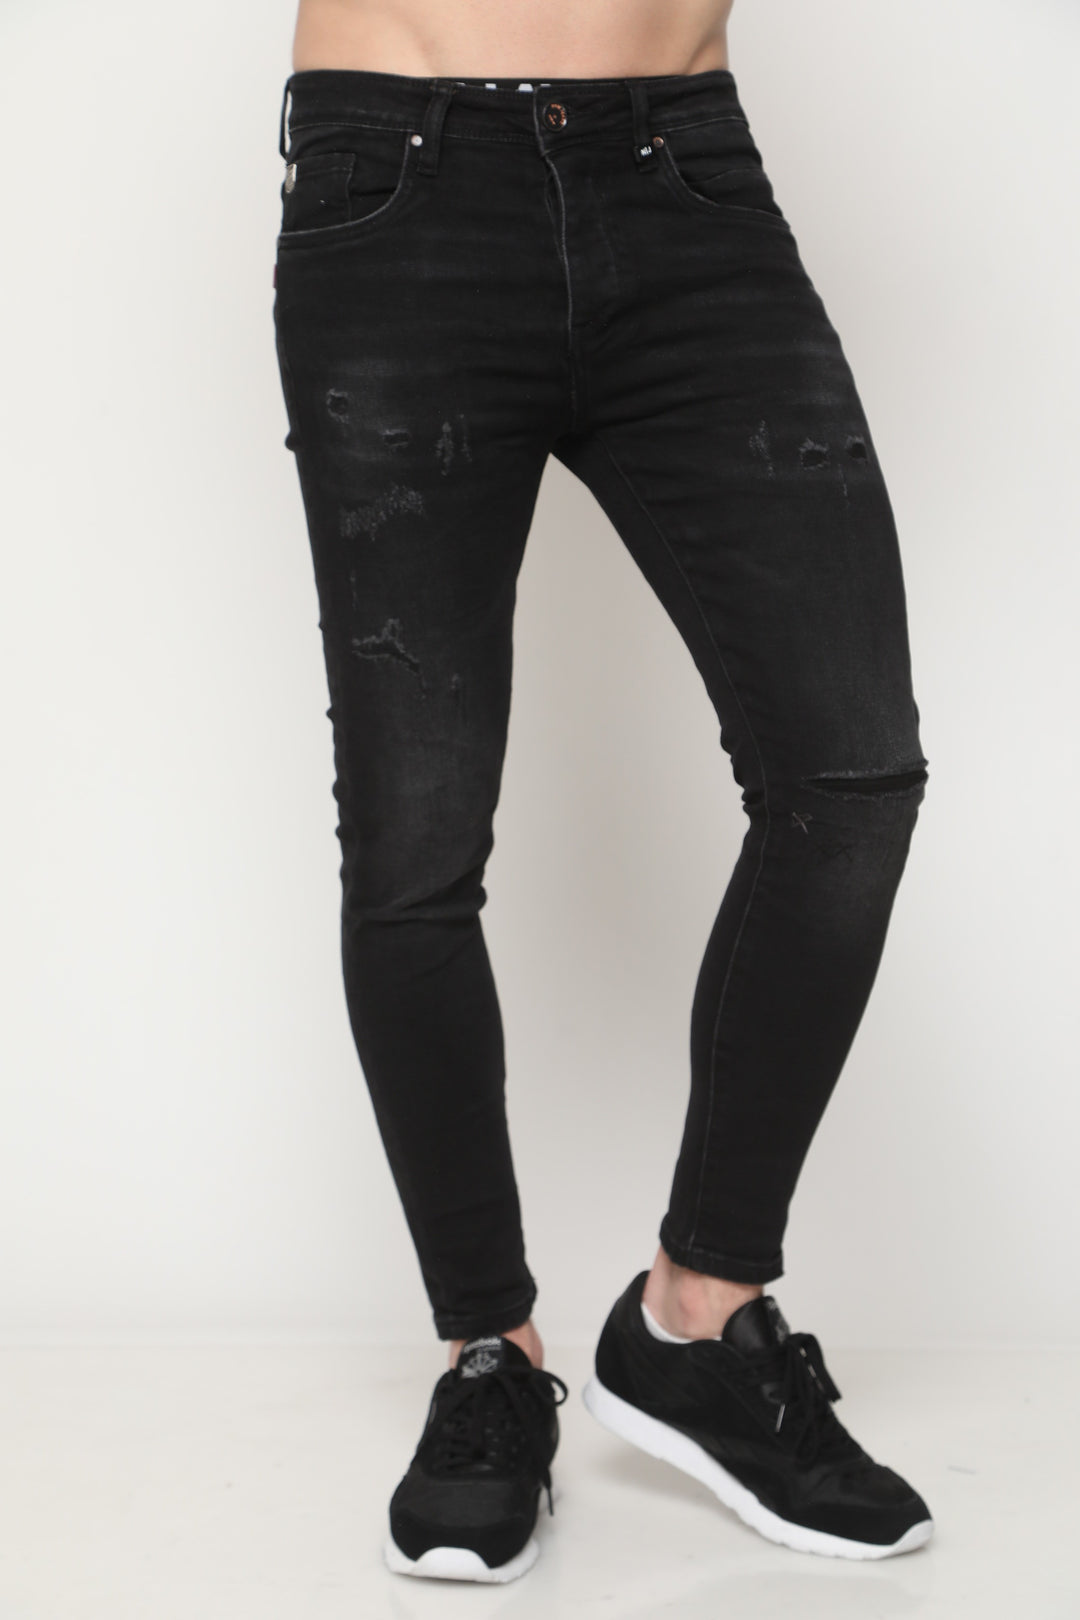 727 ג'ינס סופר סקיני | Canavaro Jeans